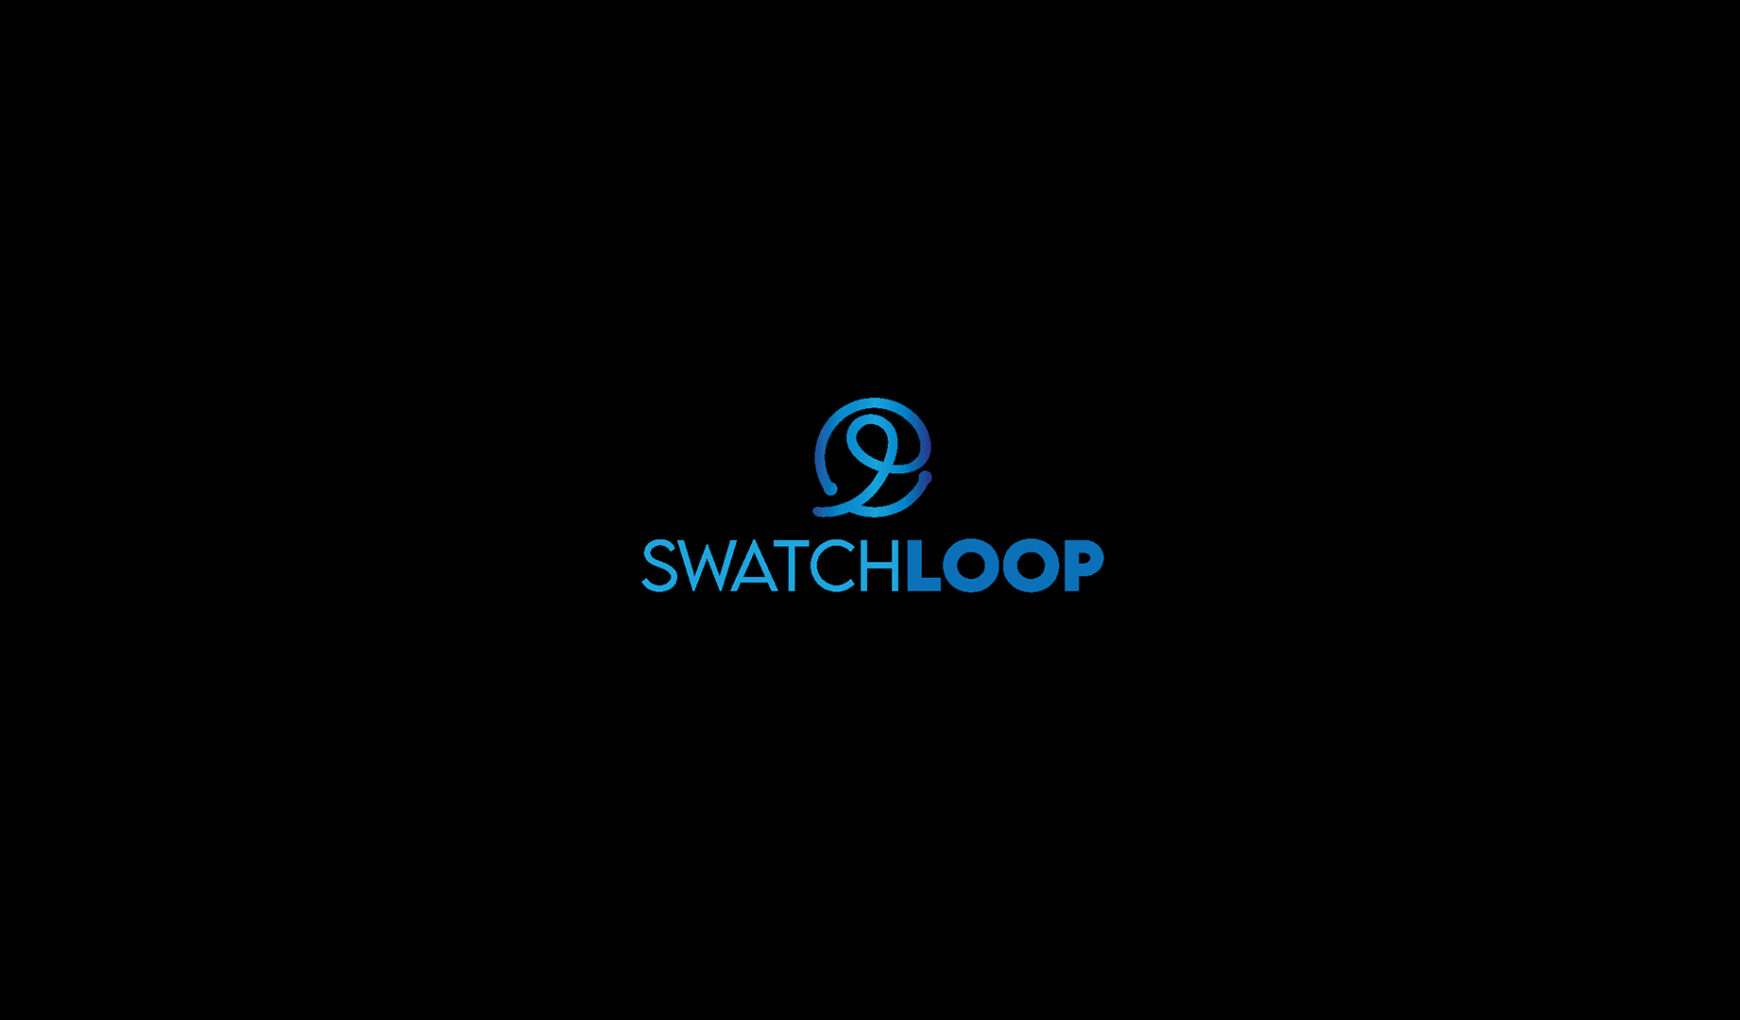 yapay-zeka-destekli-geri-donusum-platformu-swatchloop1-33-milyon-dolar-degerleme-ile-yatirim-aldi